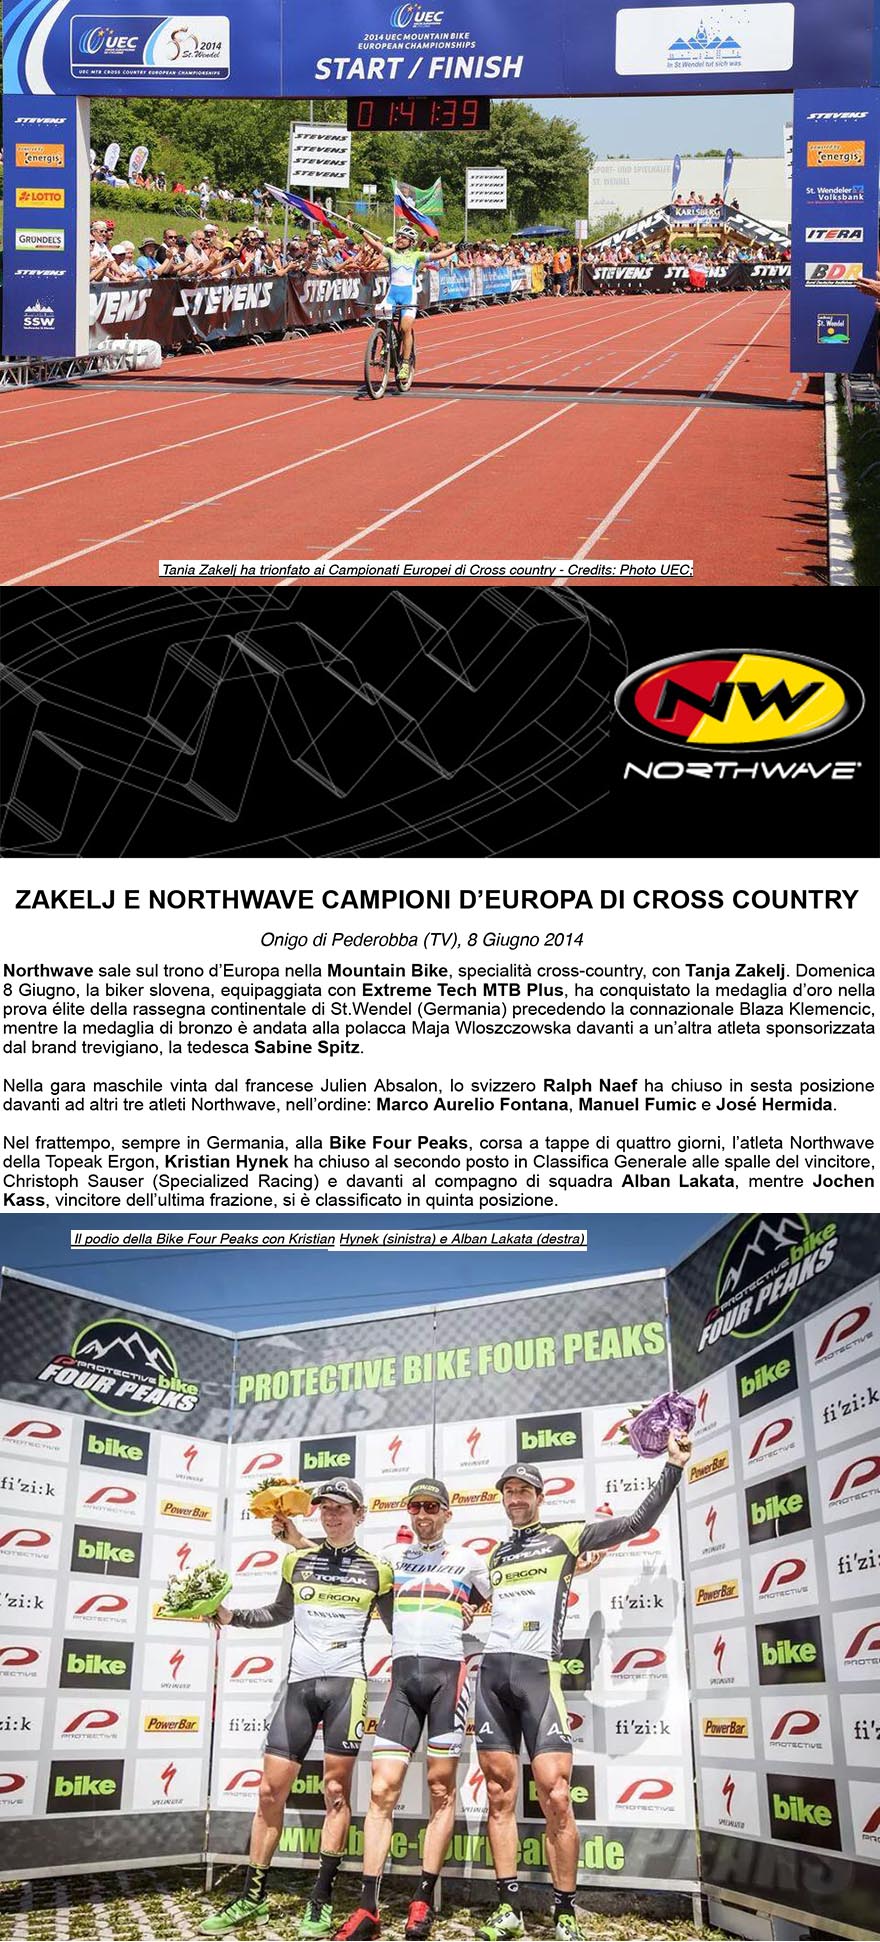 ZAKELJ E NORTHWAVE CAMPIONI DEUROPA DI CROSS COUNTRY  Comunicato Stampa 8 Giugno 2014